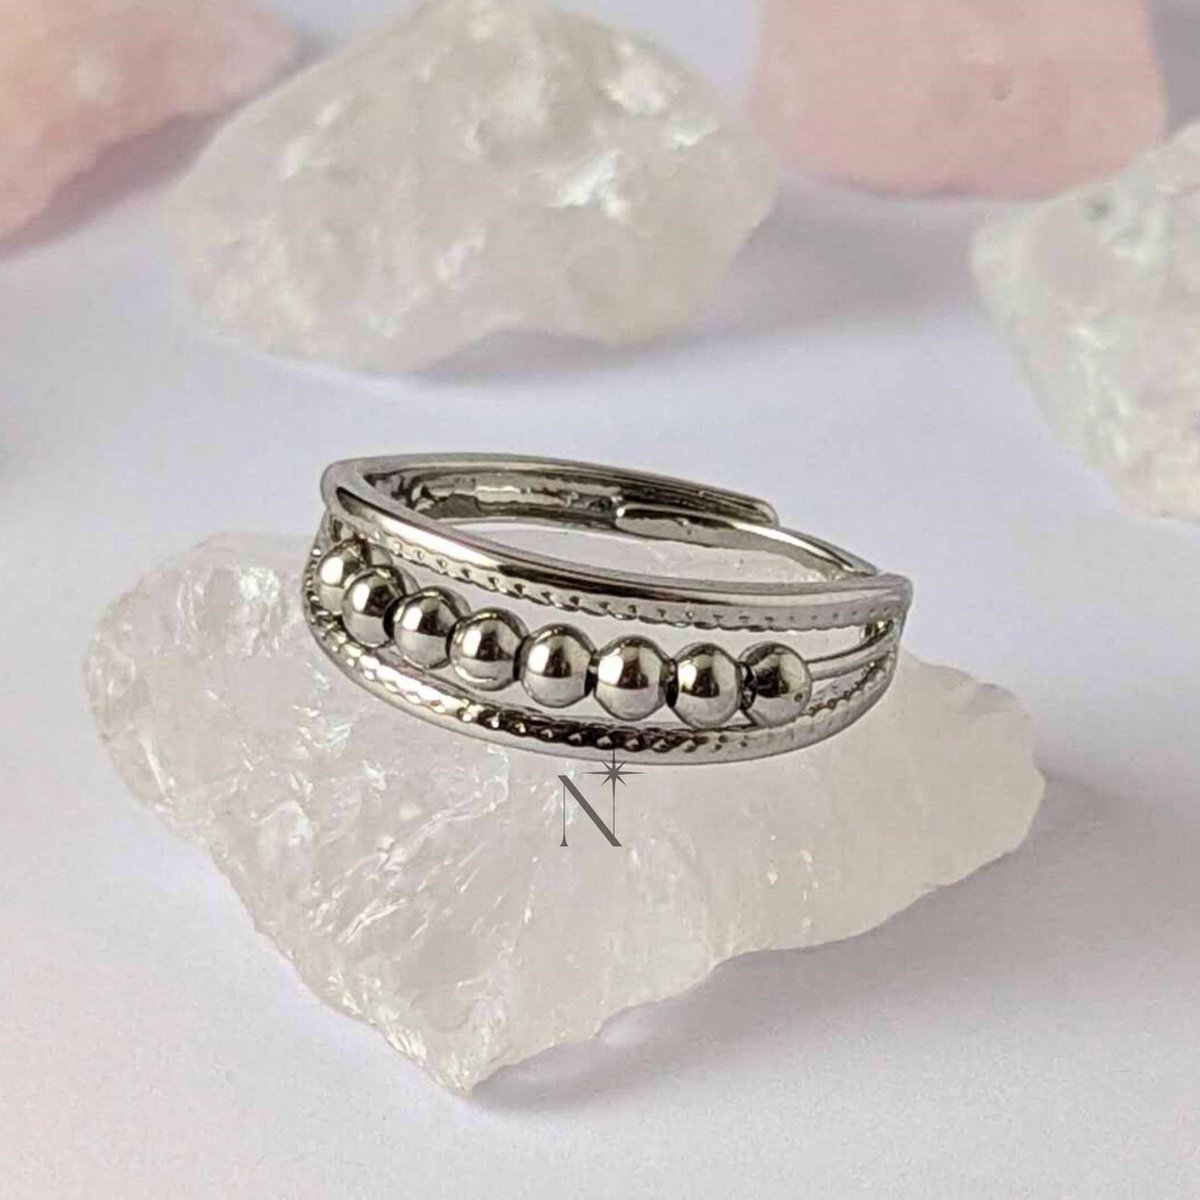 Luminora Pendulum Ring - Fidget Ring - Anxiety Ring - Stress Ring - Anti Stress Ring - Spinner Ring - Spinning Ring - Draai Ring - Wellness Sieraden - Luminora Wellness Juwelier